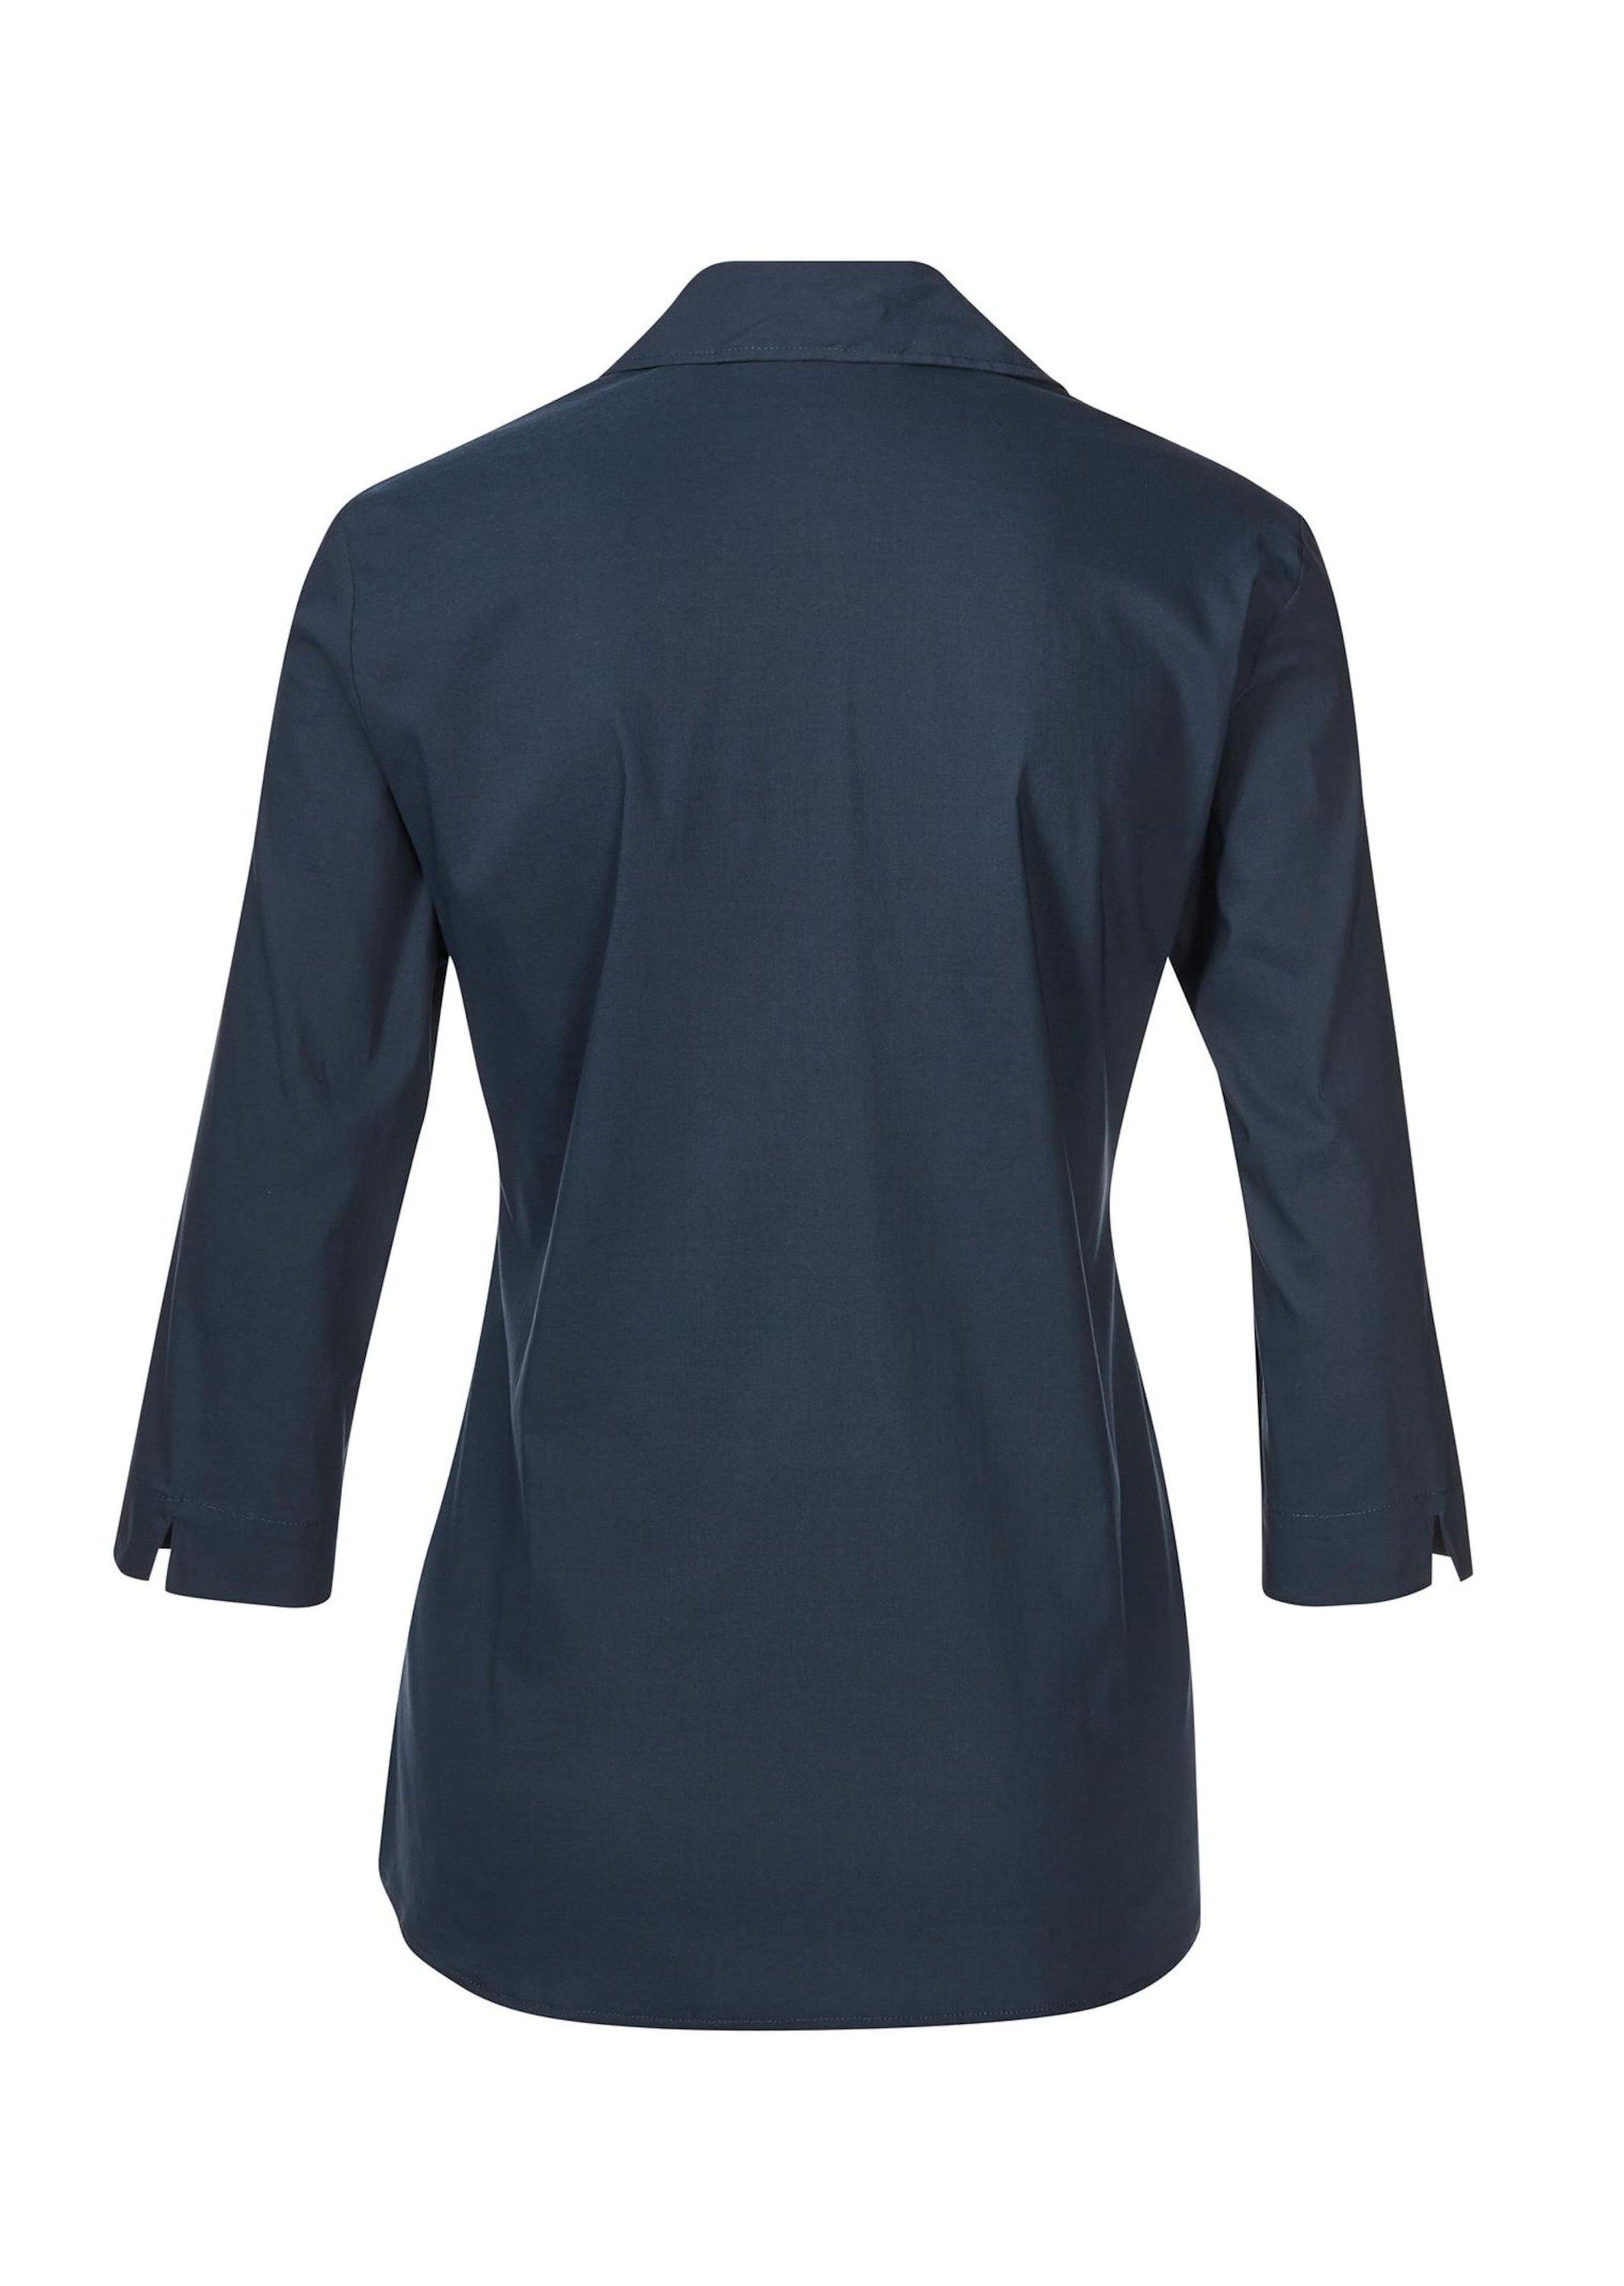 Bluse mit Stretchbequeme marine Hemdbluse GOLDNER Baumwolle Kurzgröße: